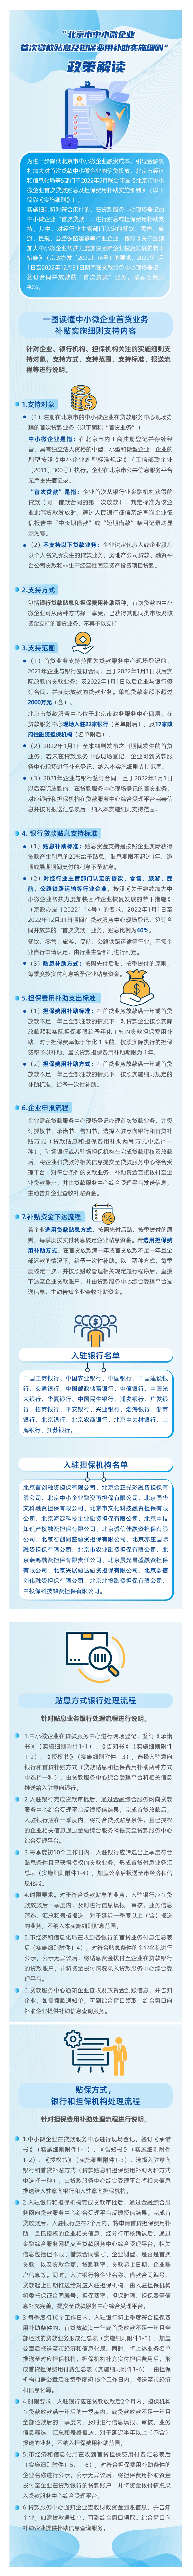 北京市中小微企业首次贷款贴息及担保费用补助实施细则.jpg